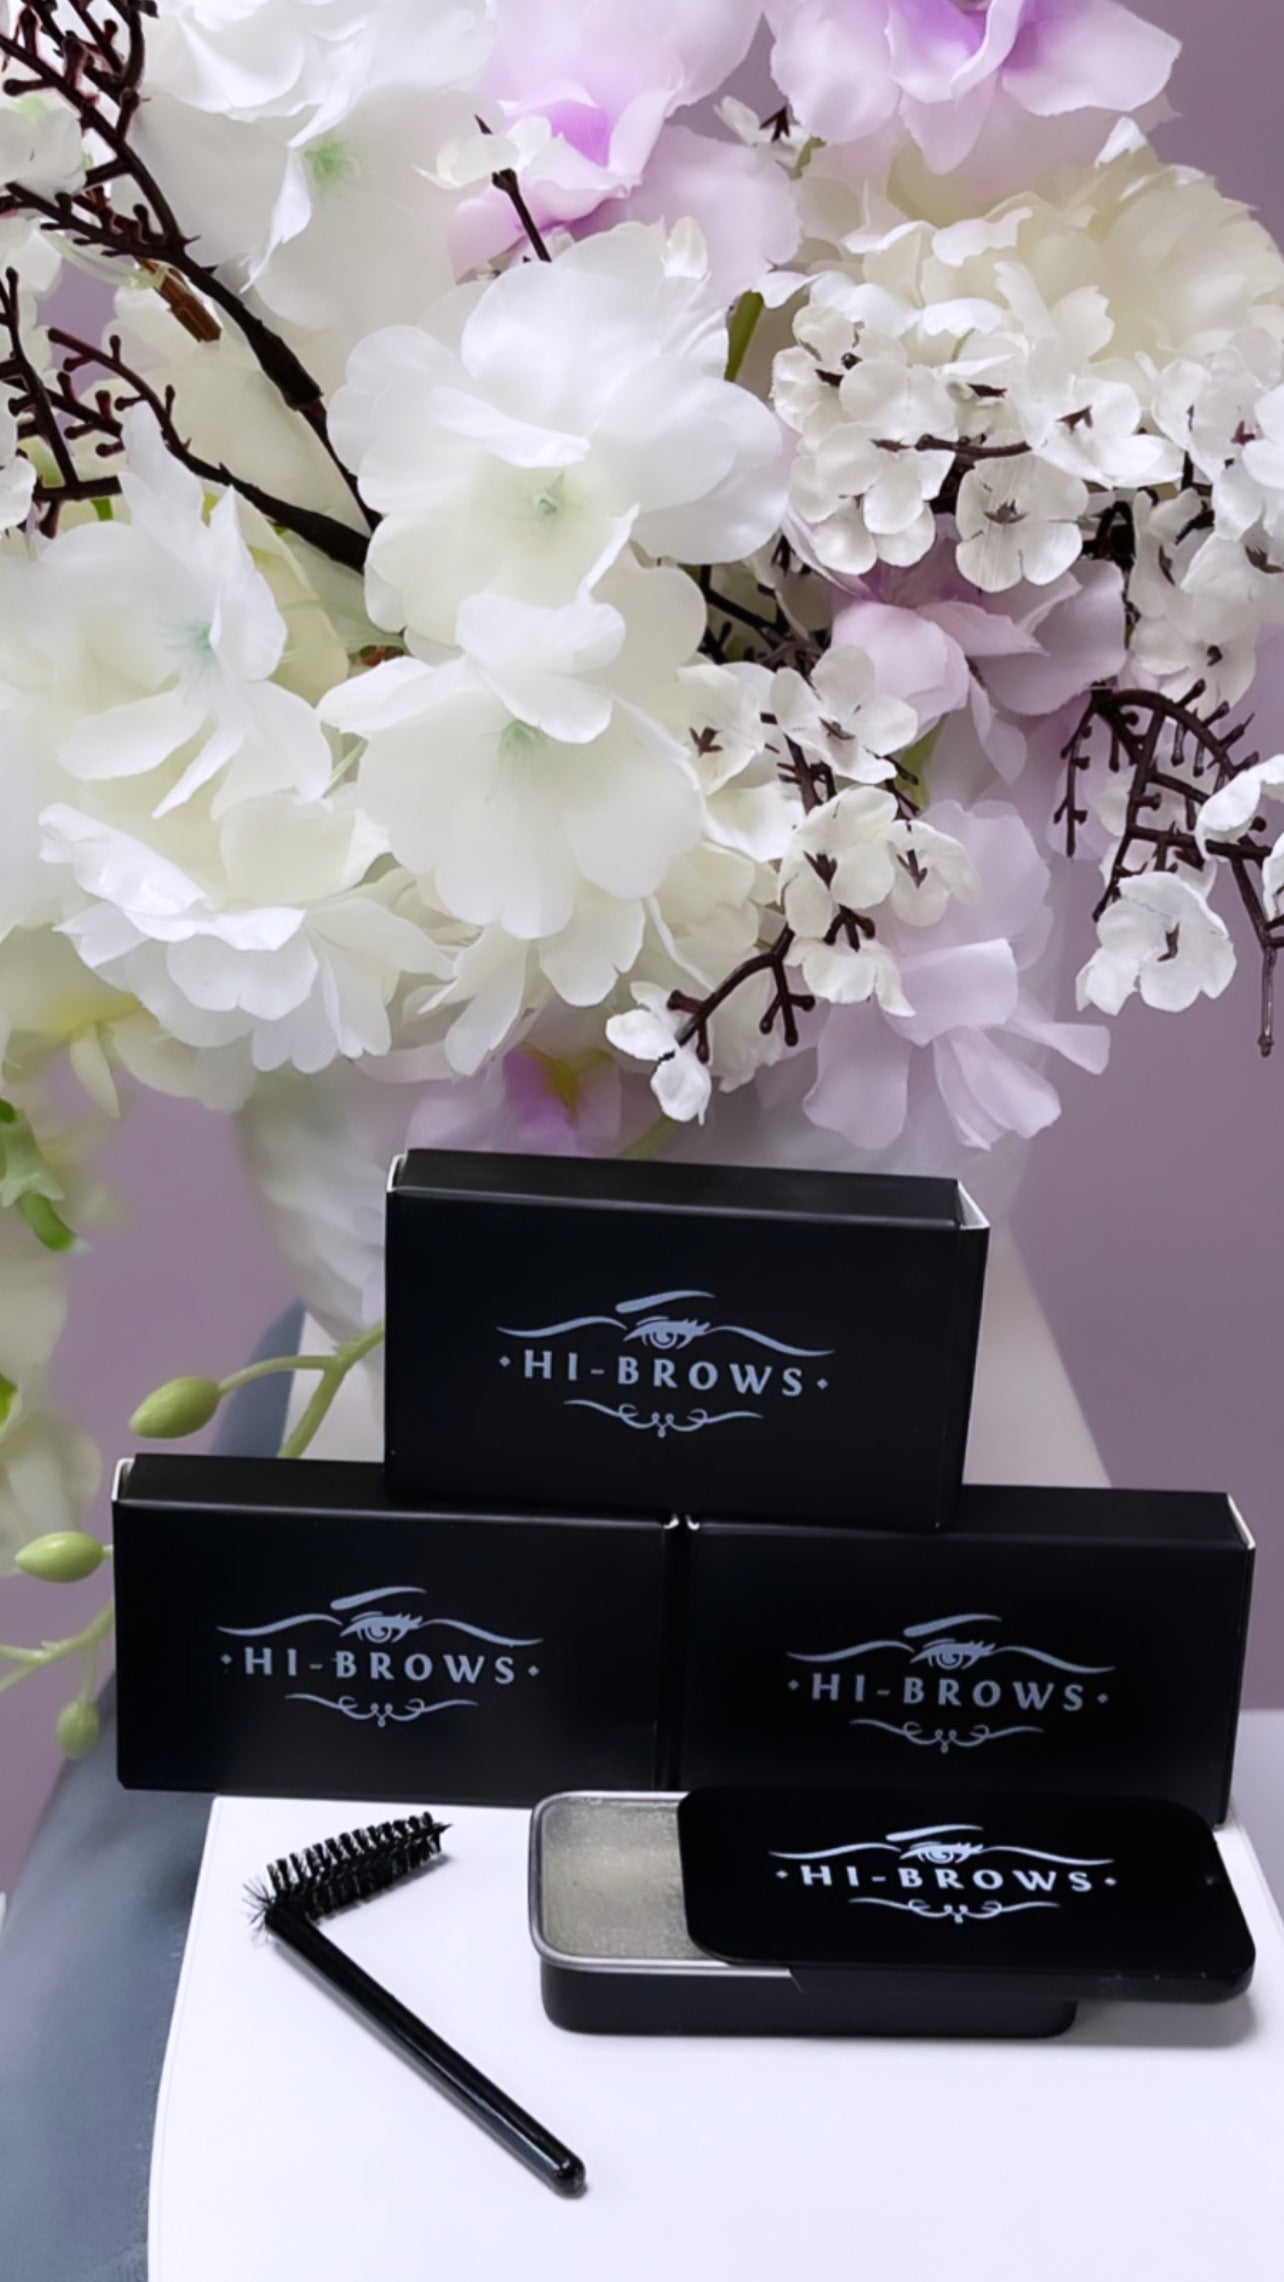 Hi-brows brow soap